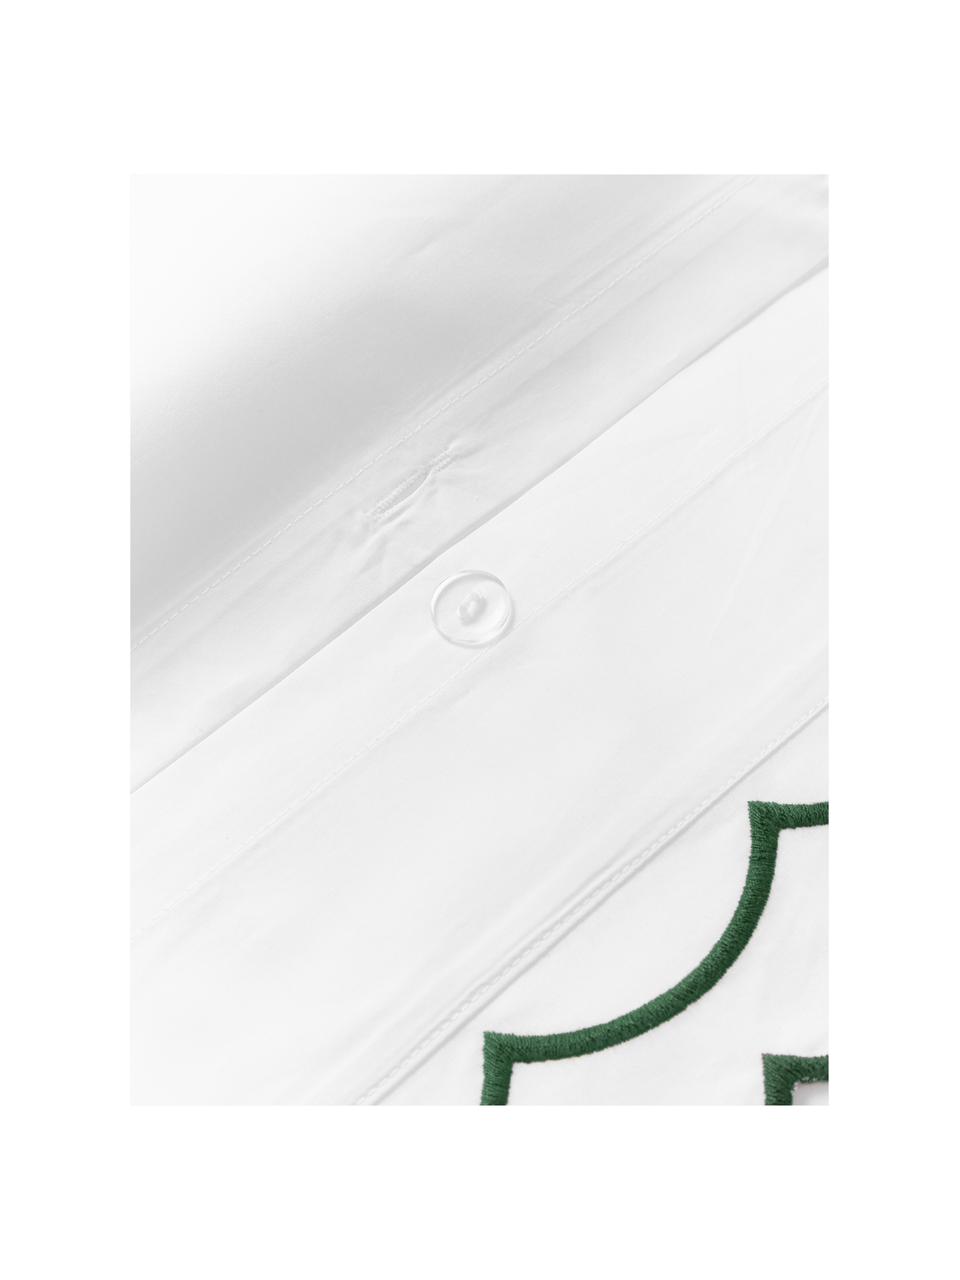 Baumwollperkal-Bettdeckenbezug Atina mit gewelltem Stehsaum, Webart: Perkal Fadendichte 200 TC, Weiß, Dunkelgrün, B 200 x L 200 cm